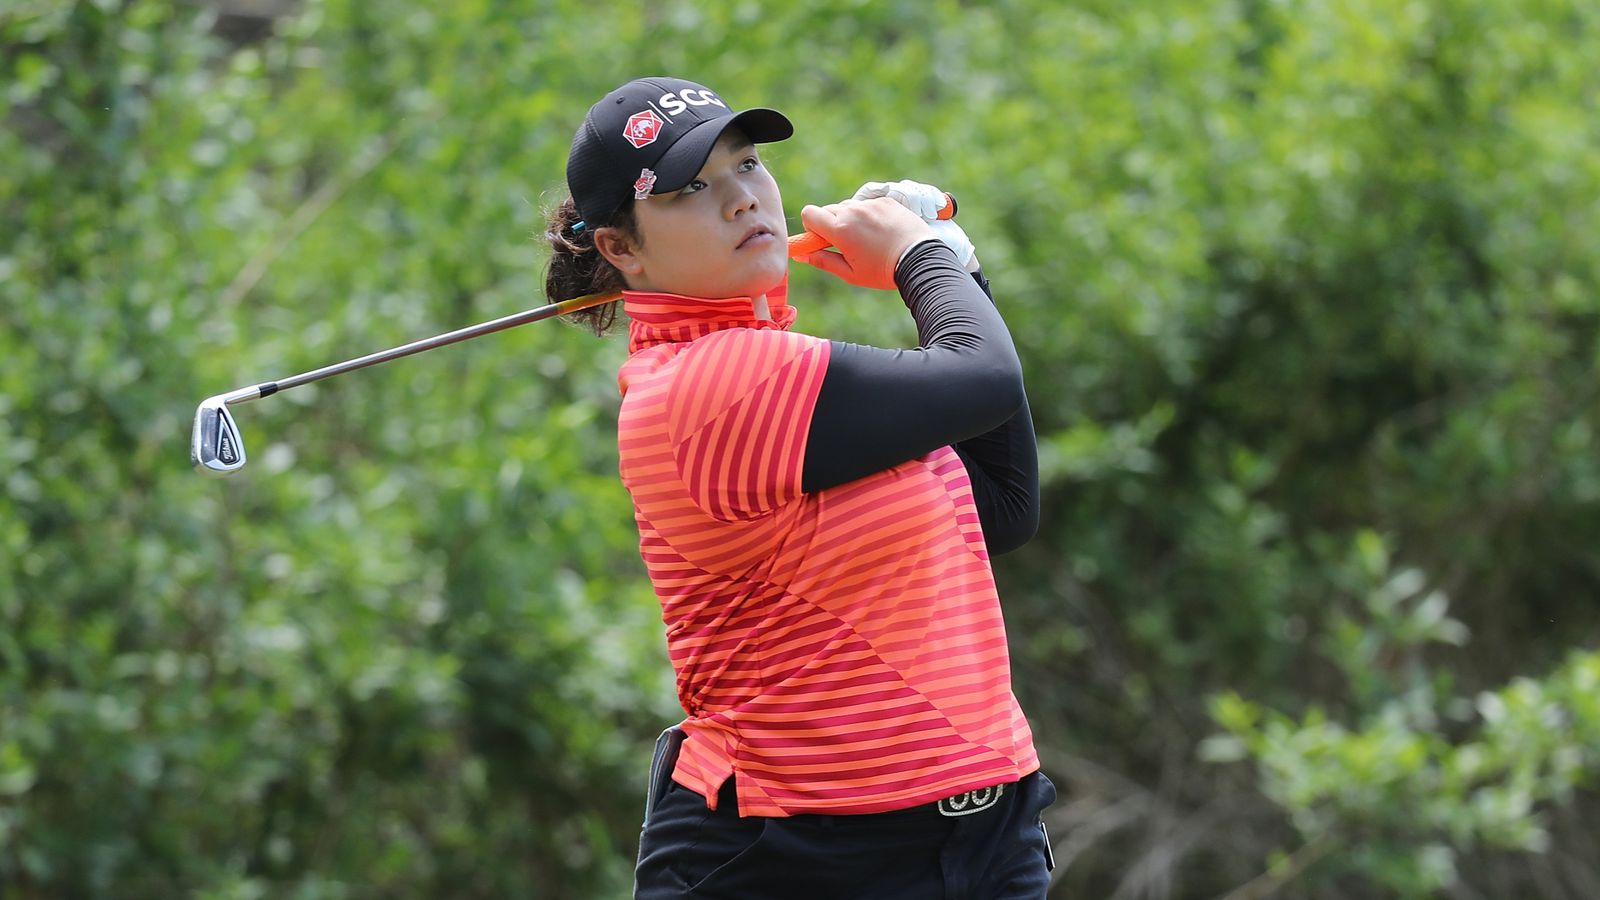 Ariya Jutanugarn leads by one shot at LPGA Volvik Championship | Golf ...